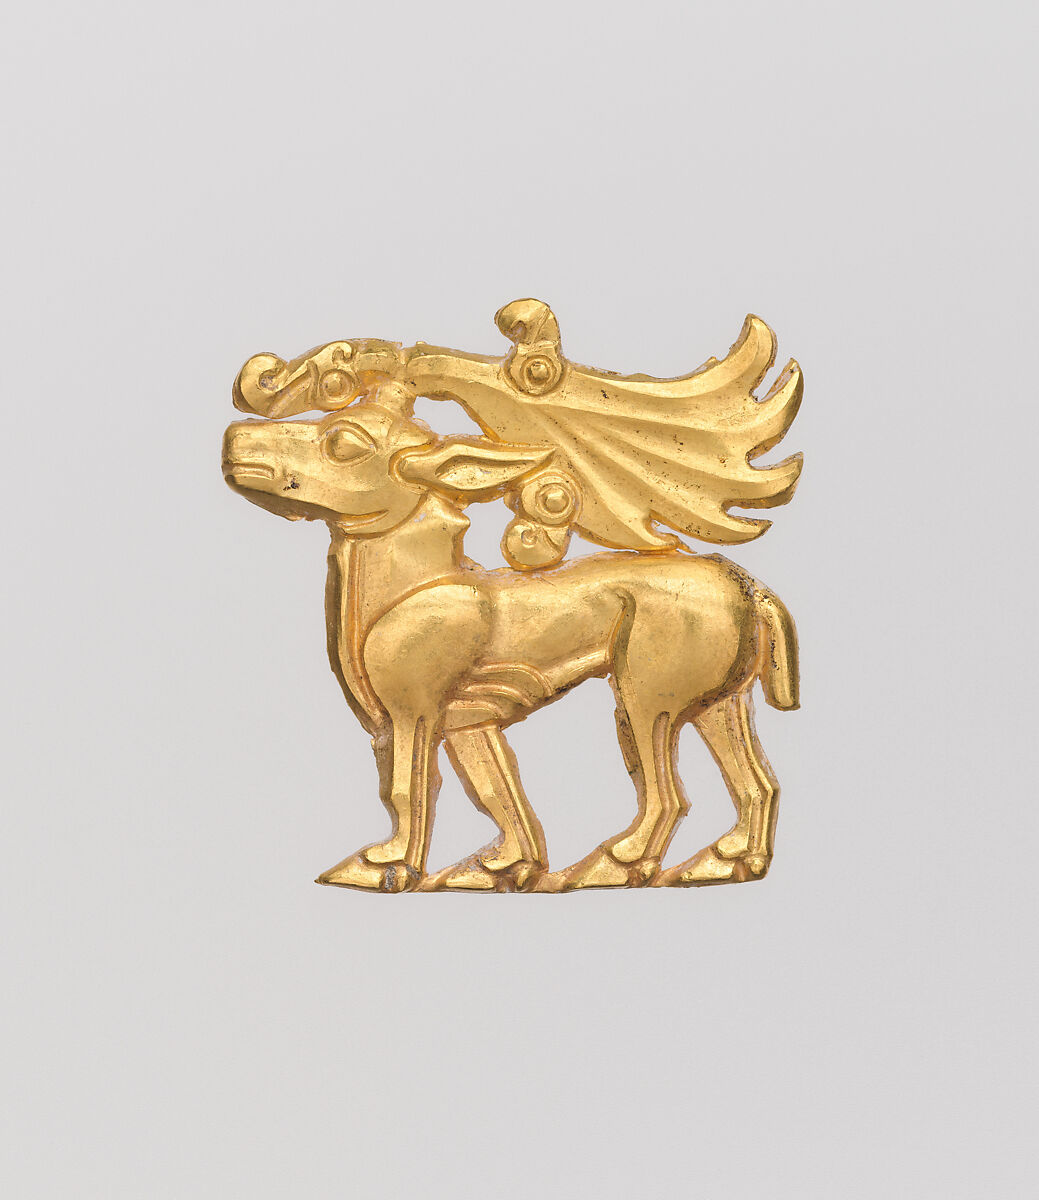 Dress ornament, Gold, Scythian 